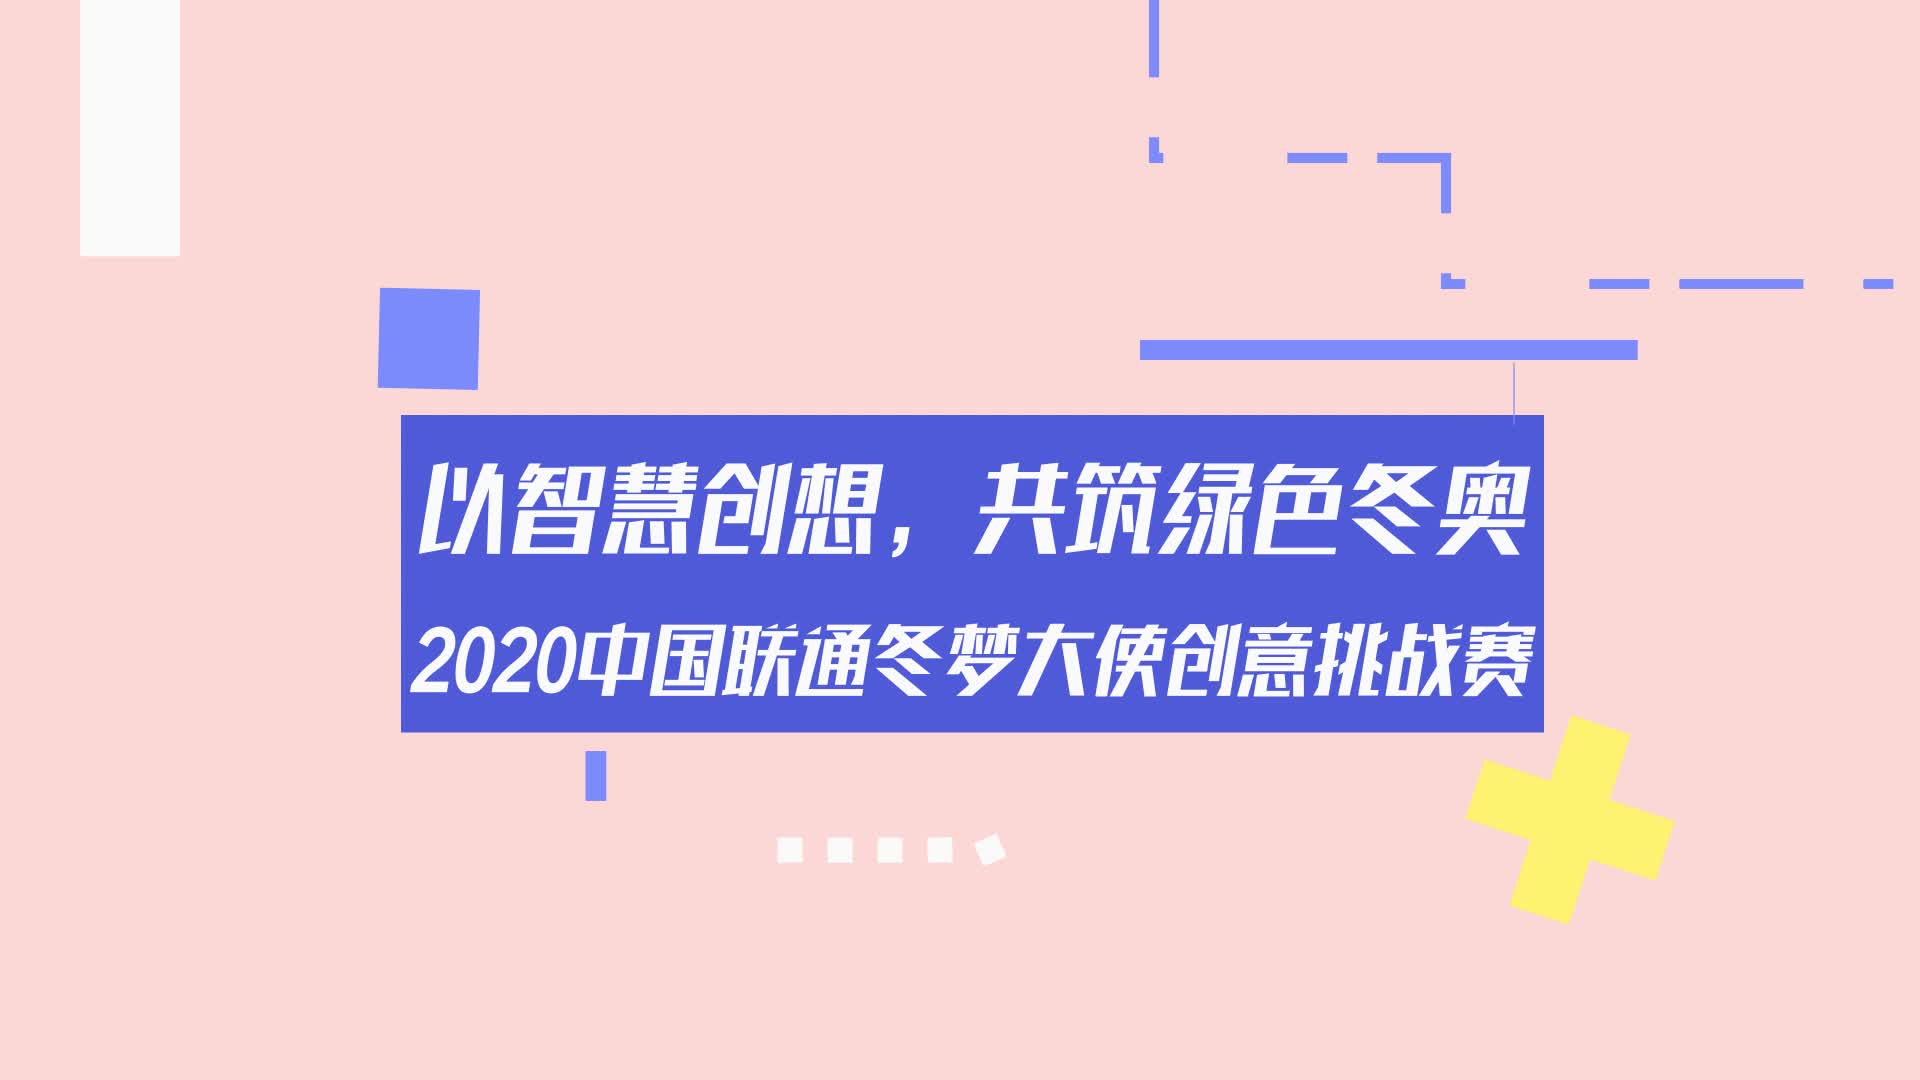 2020中国联通冬梦大使创意挑战赛智慧工坊金句大放送第四弹